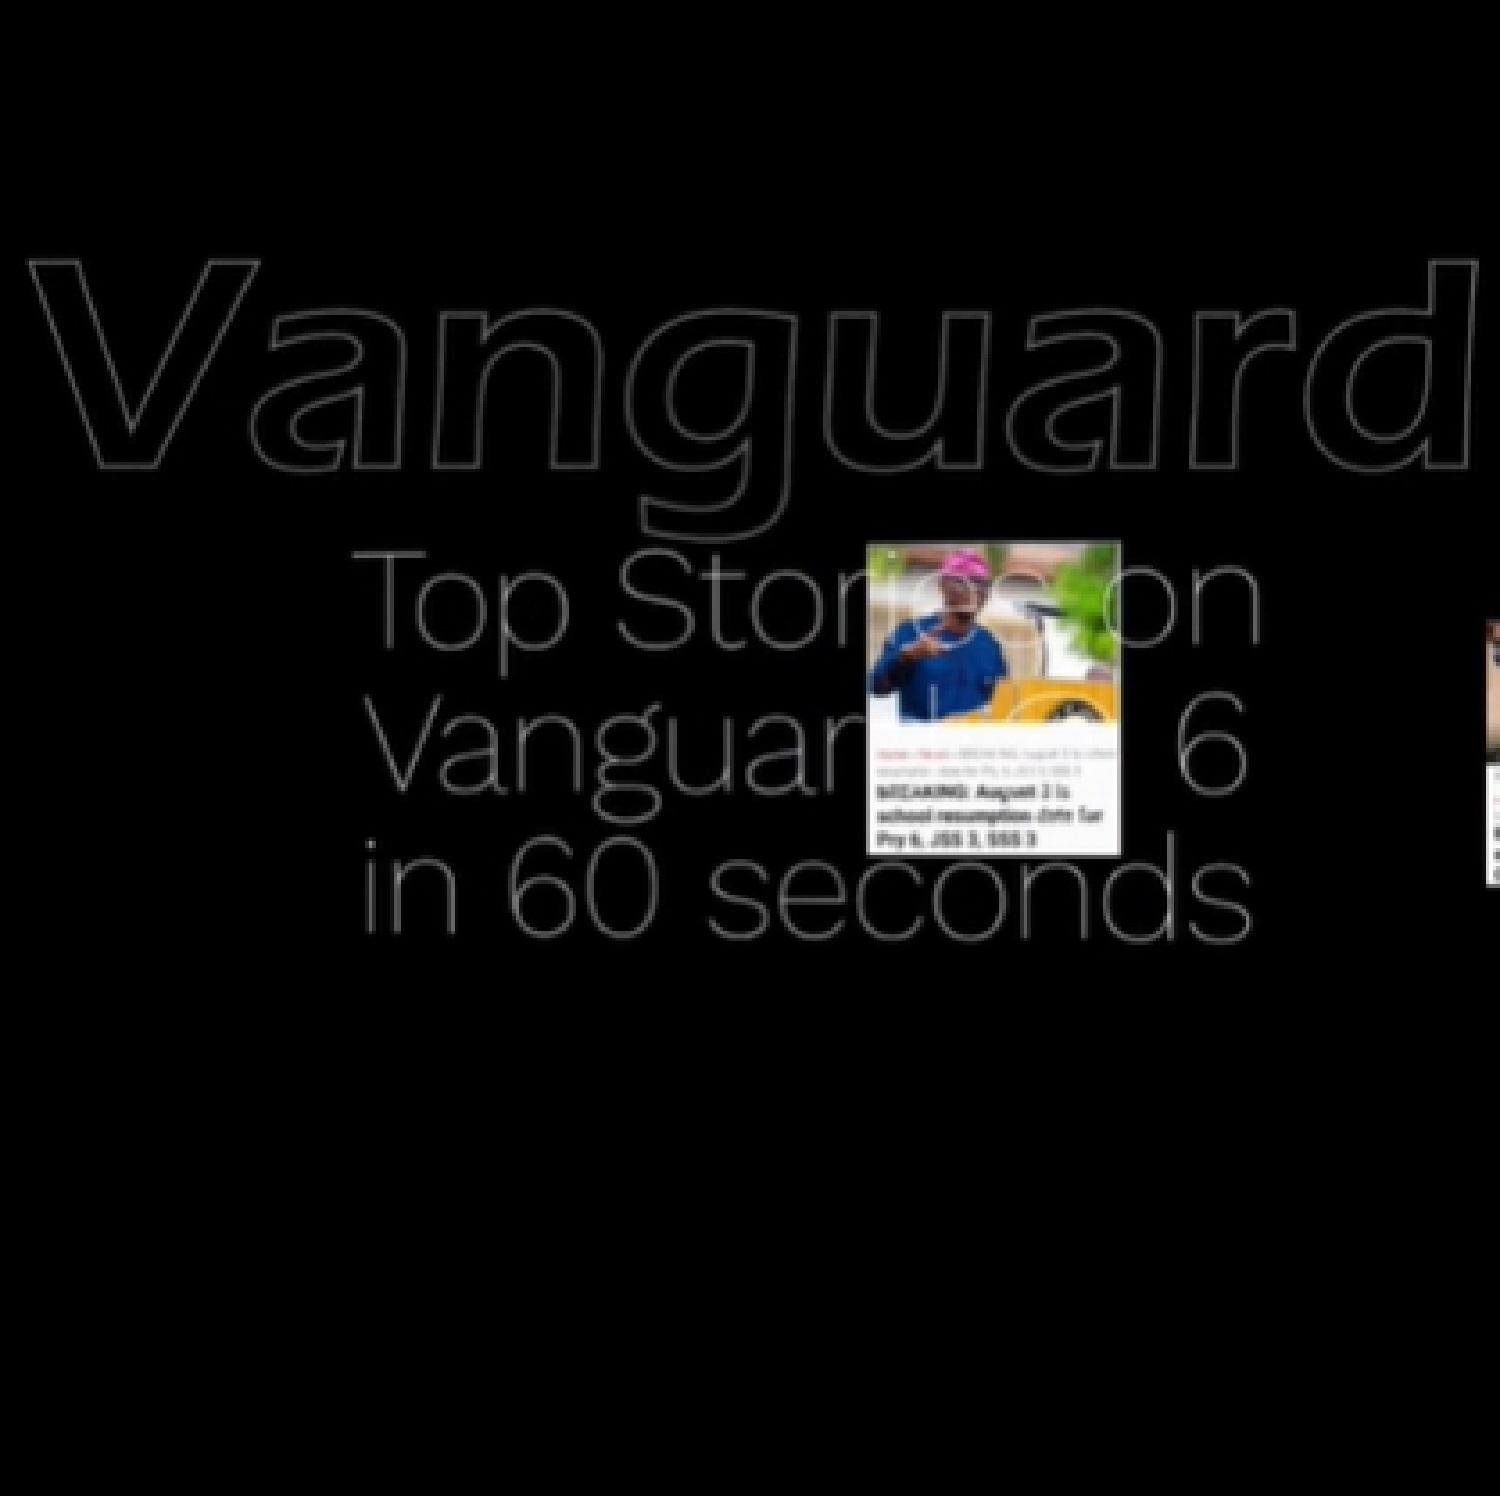 Vanguard top stories in 60 seconds